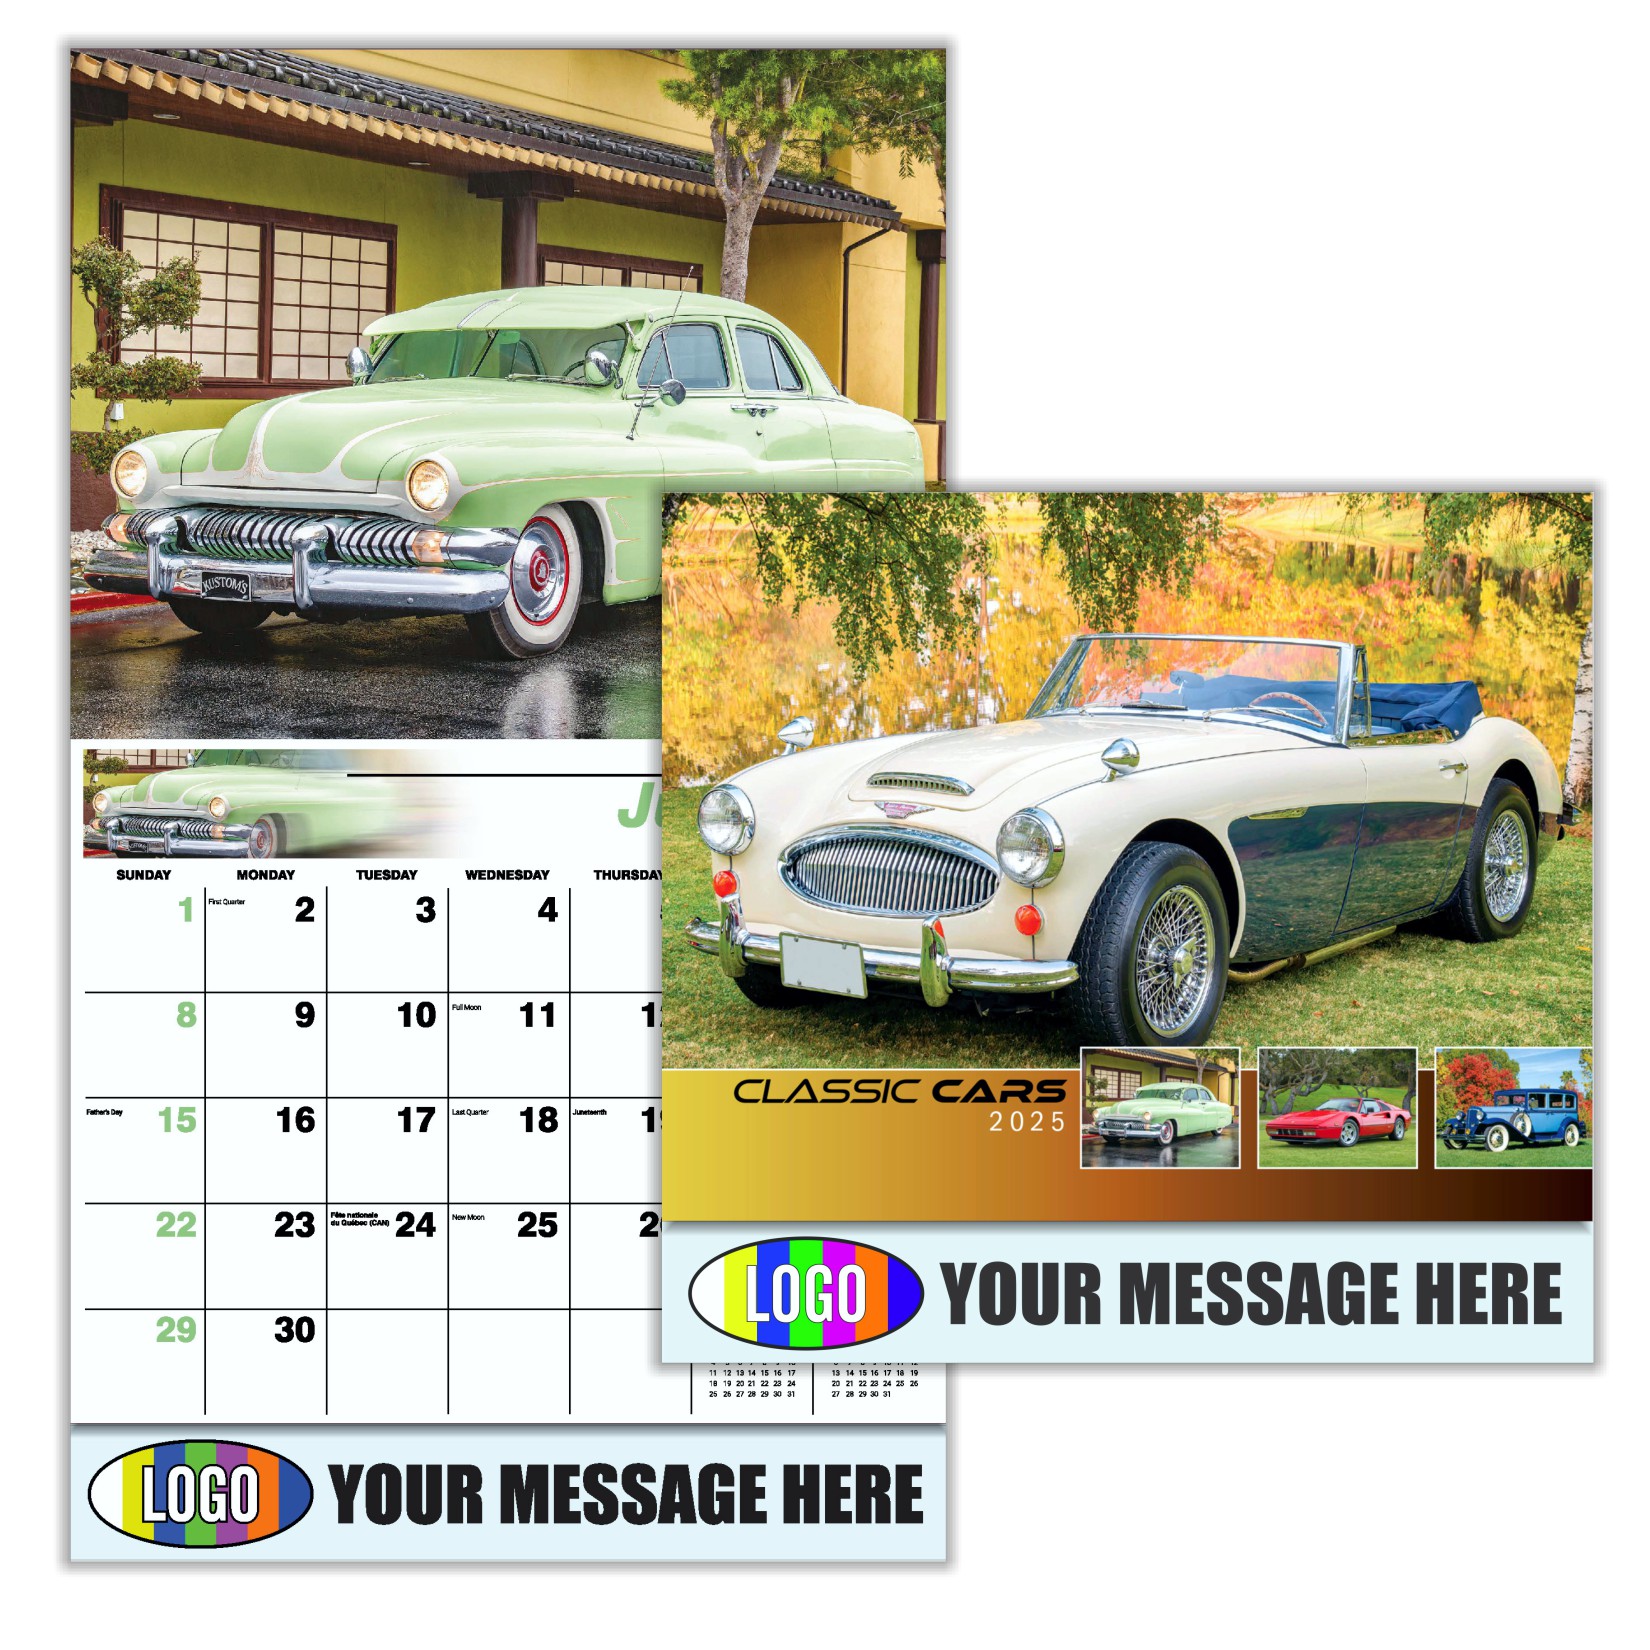 Classic Cars 2024 Automotive Business Promo calendar